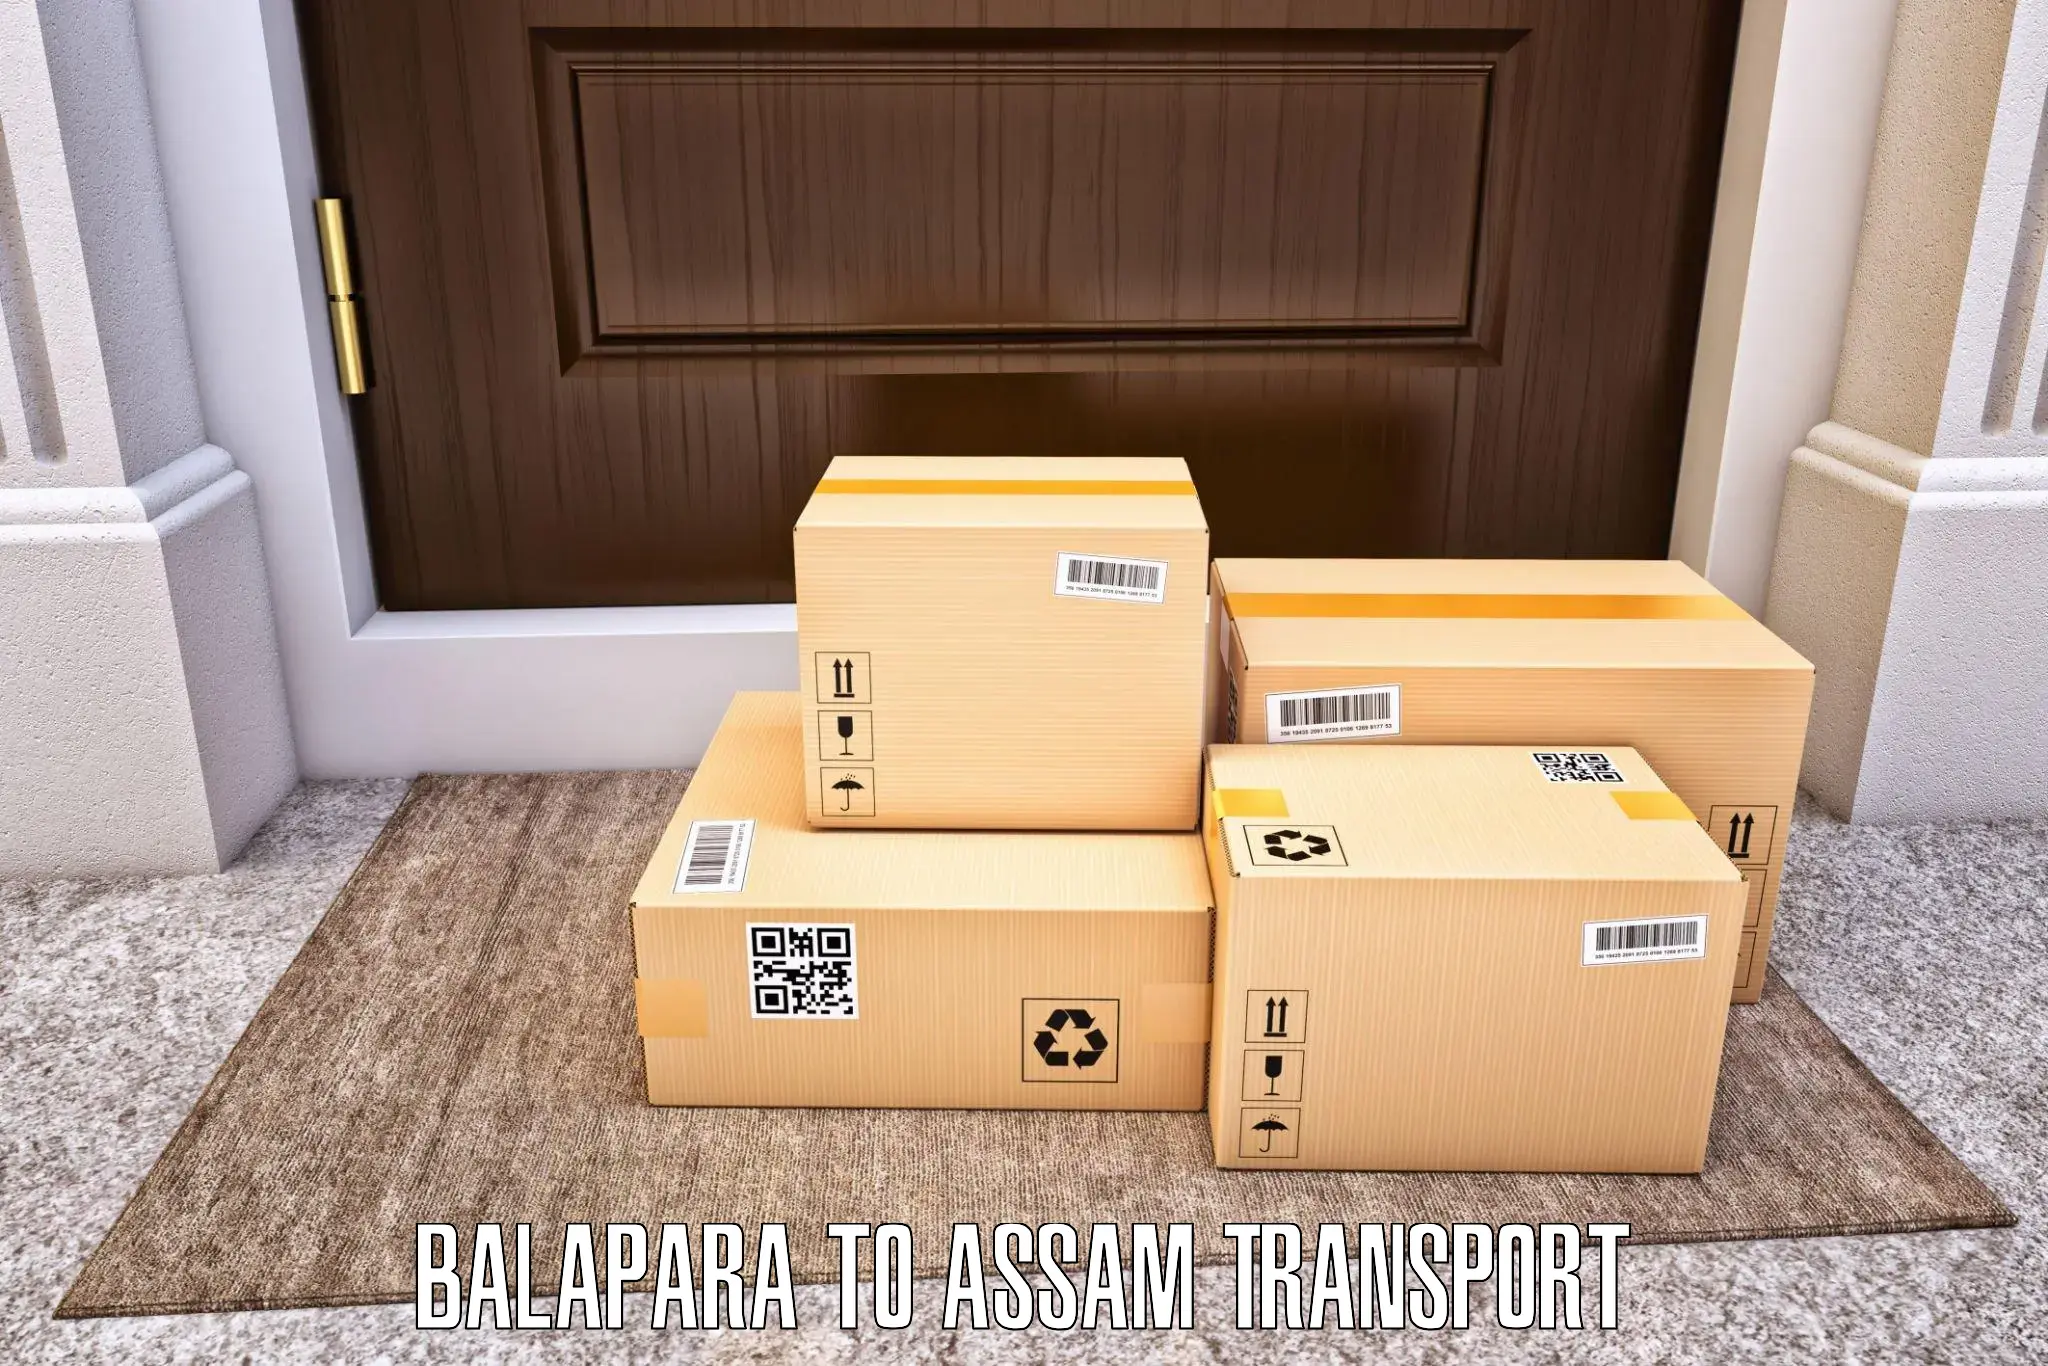 Vehicle courier services Balapara to Goalpara